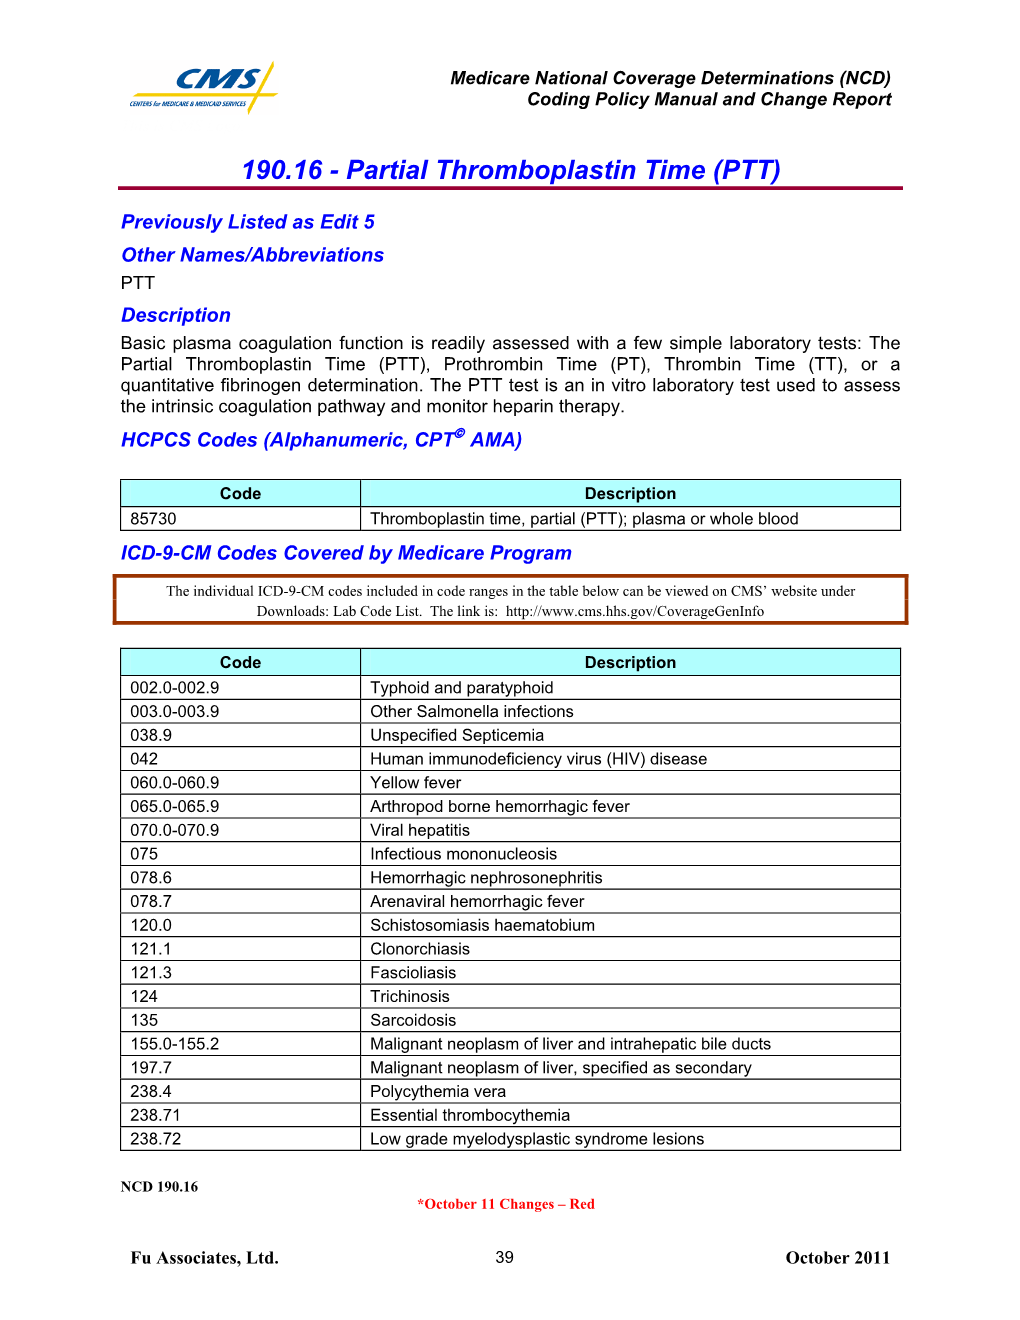 Partial Thromboplastin Time (PTT)